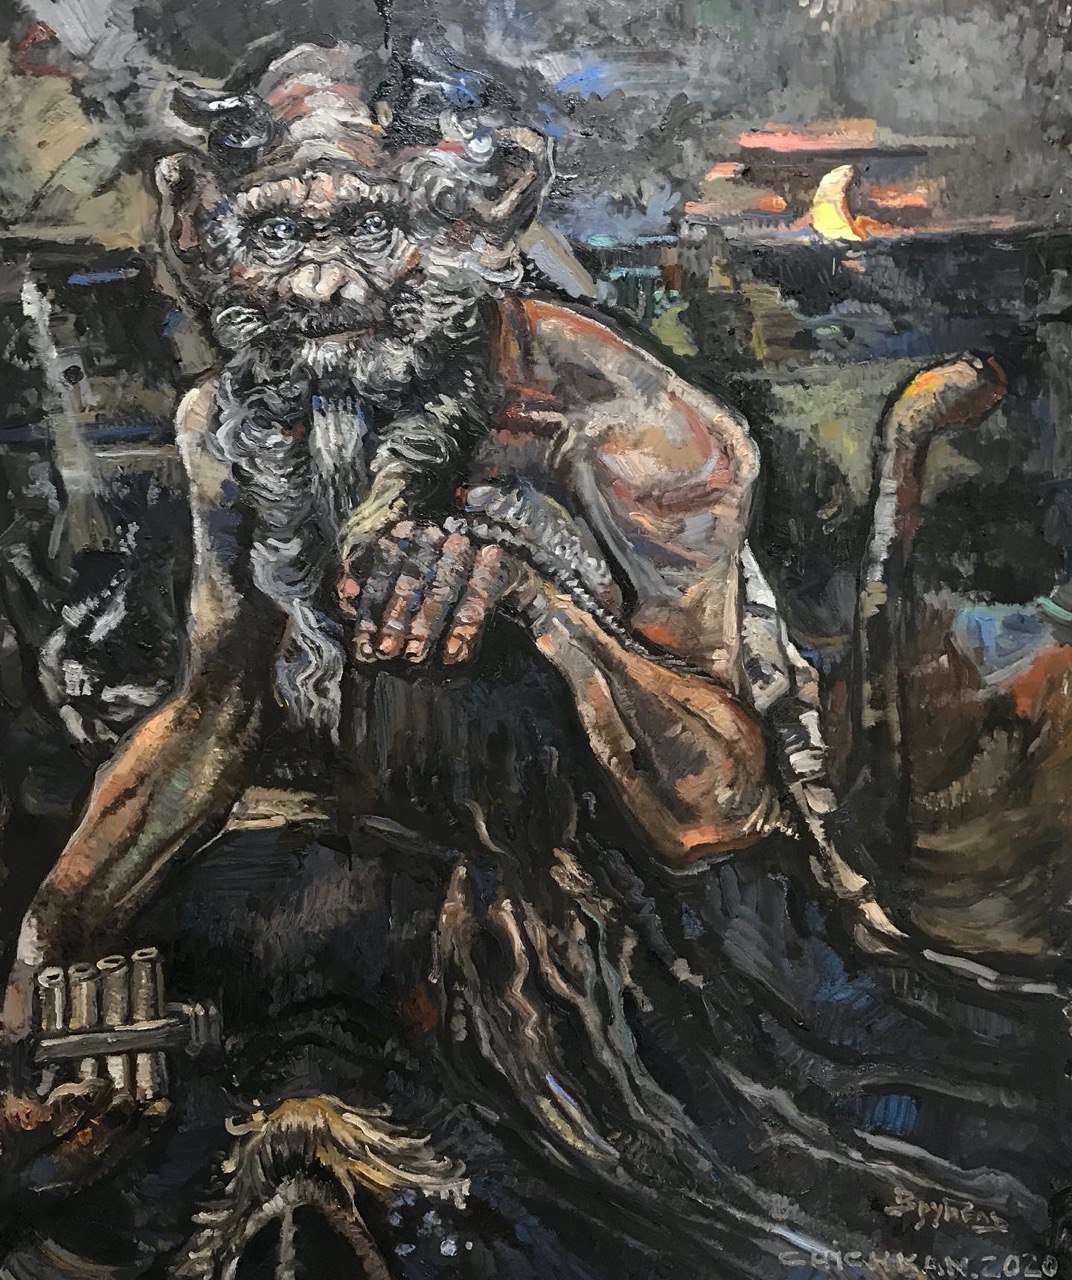 Ілля Чичкан. «Пан» Михайла Врубеля з проекту «Музейні джунглі», 2020